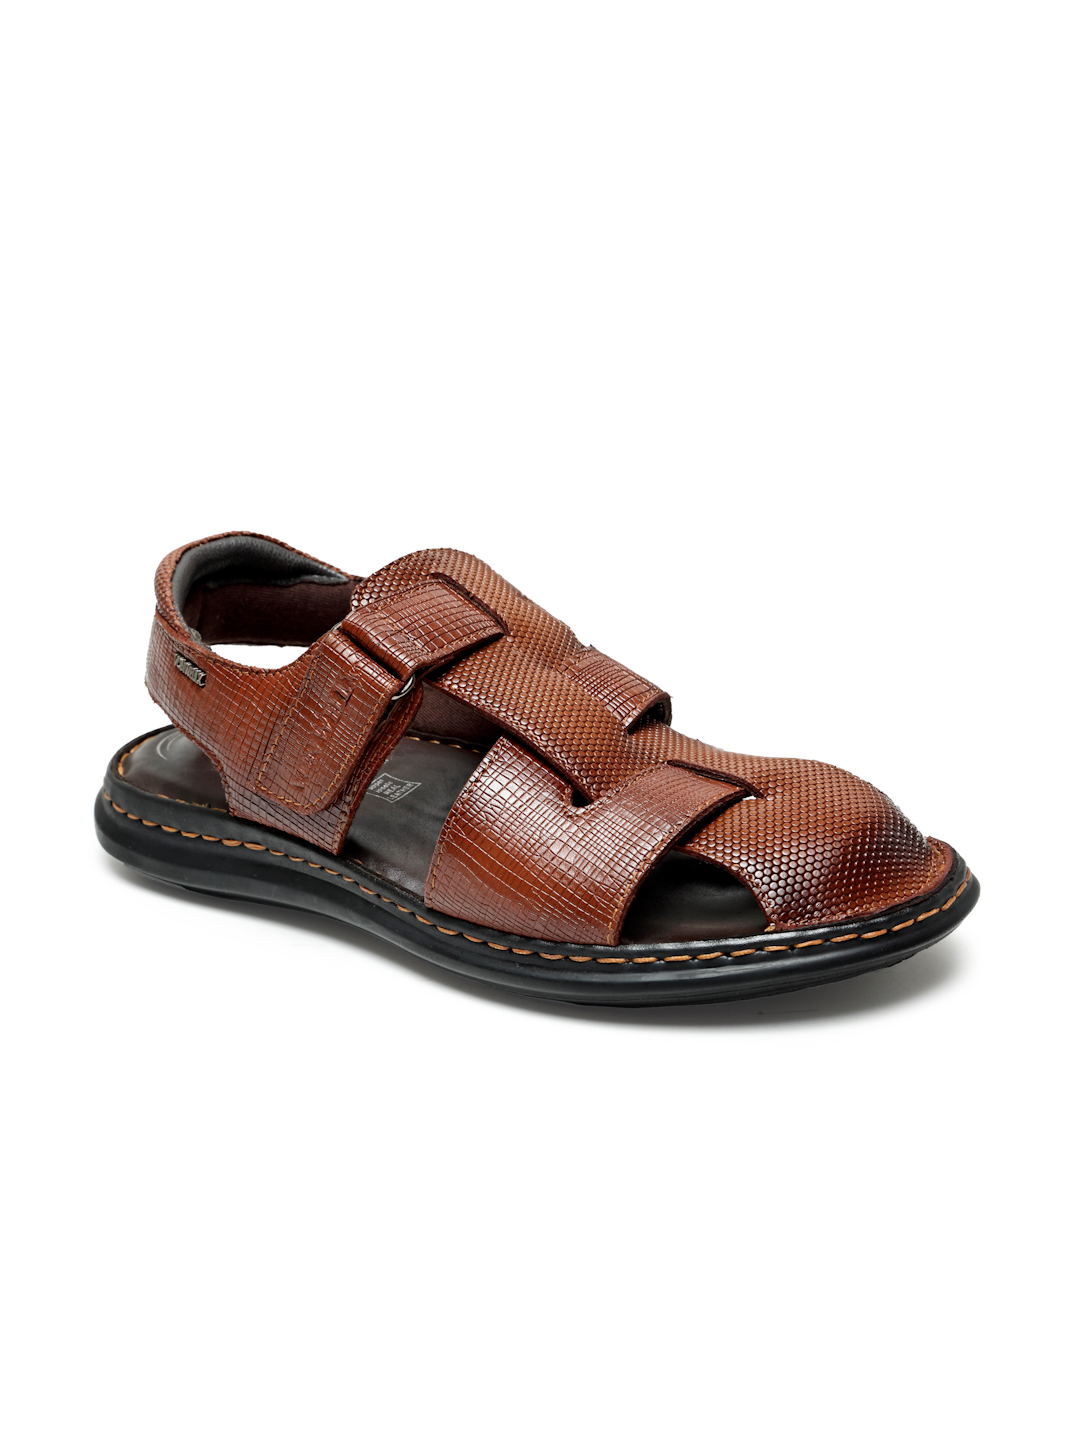 Buy Von Wellx Germany Comfort Men's Tan Sandals Morgen Online in Jaipur